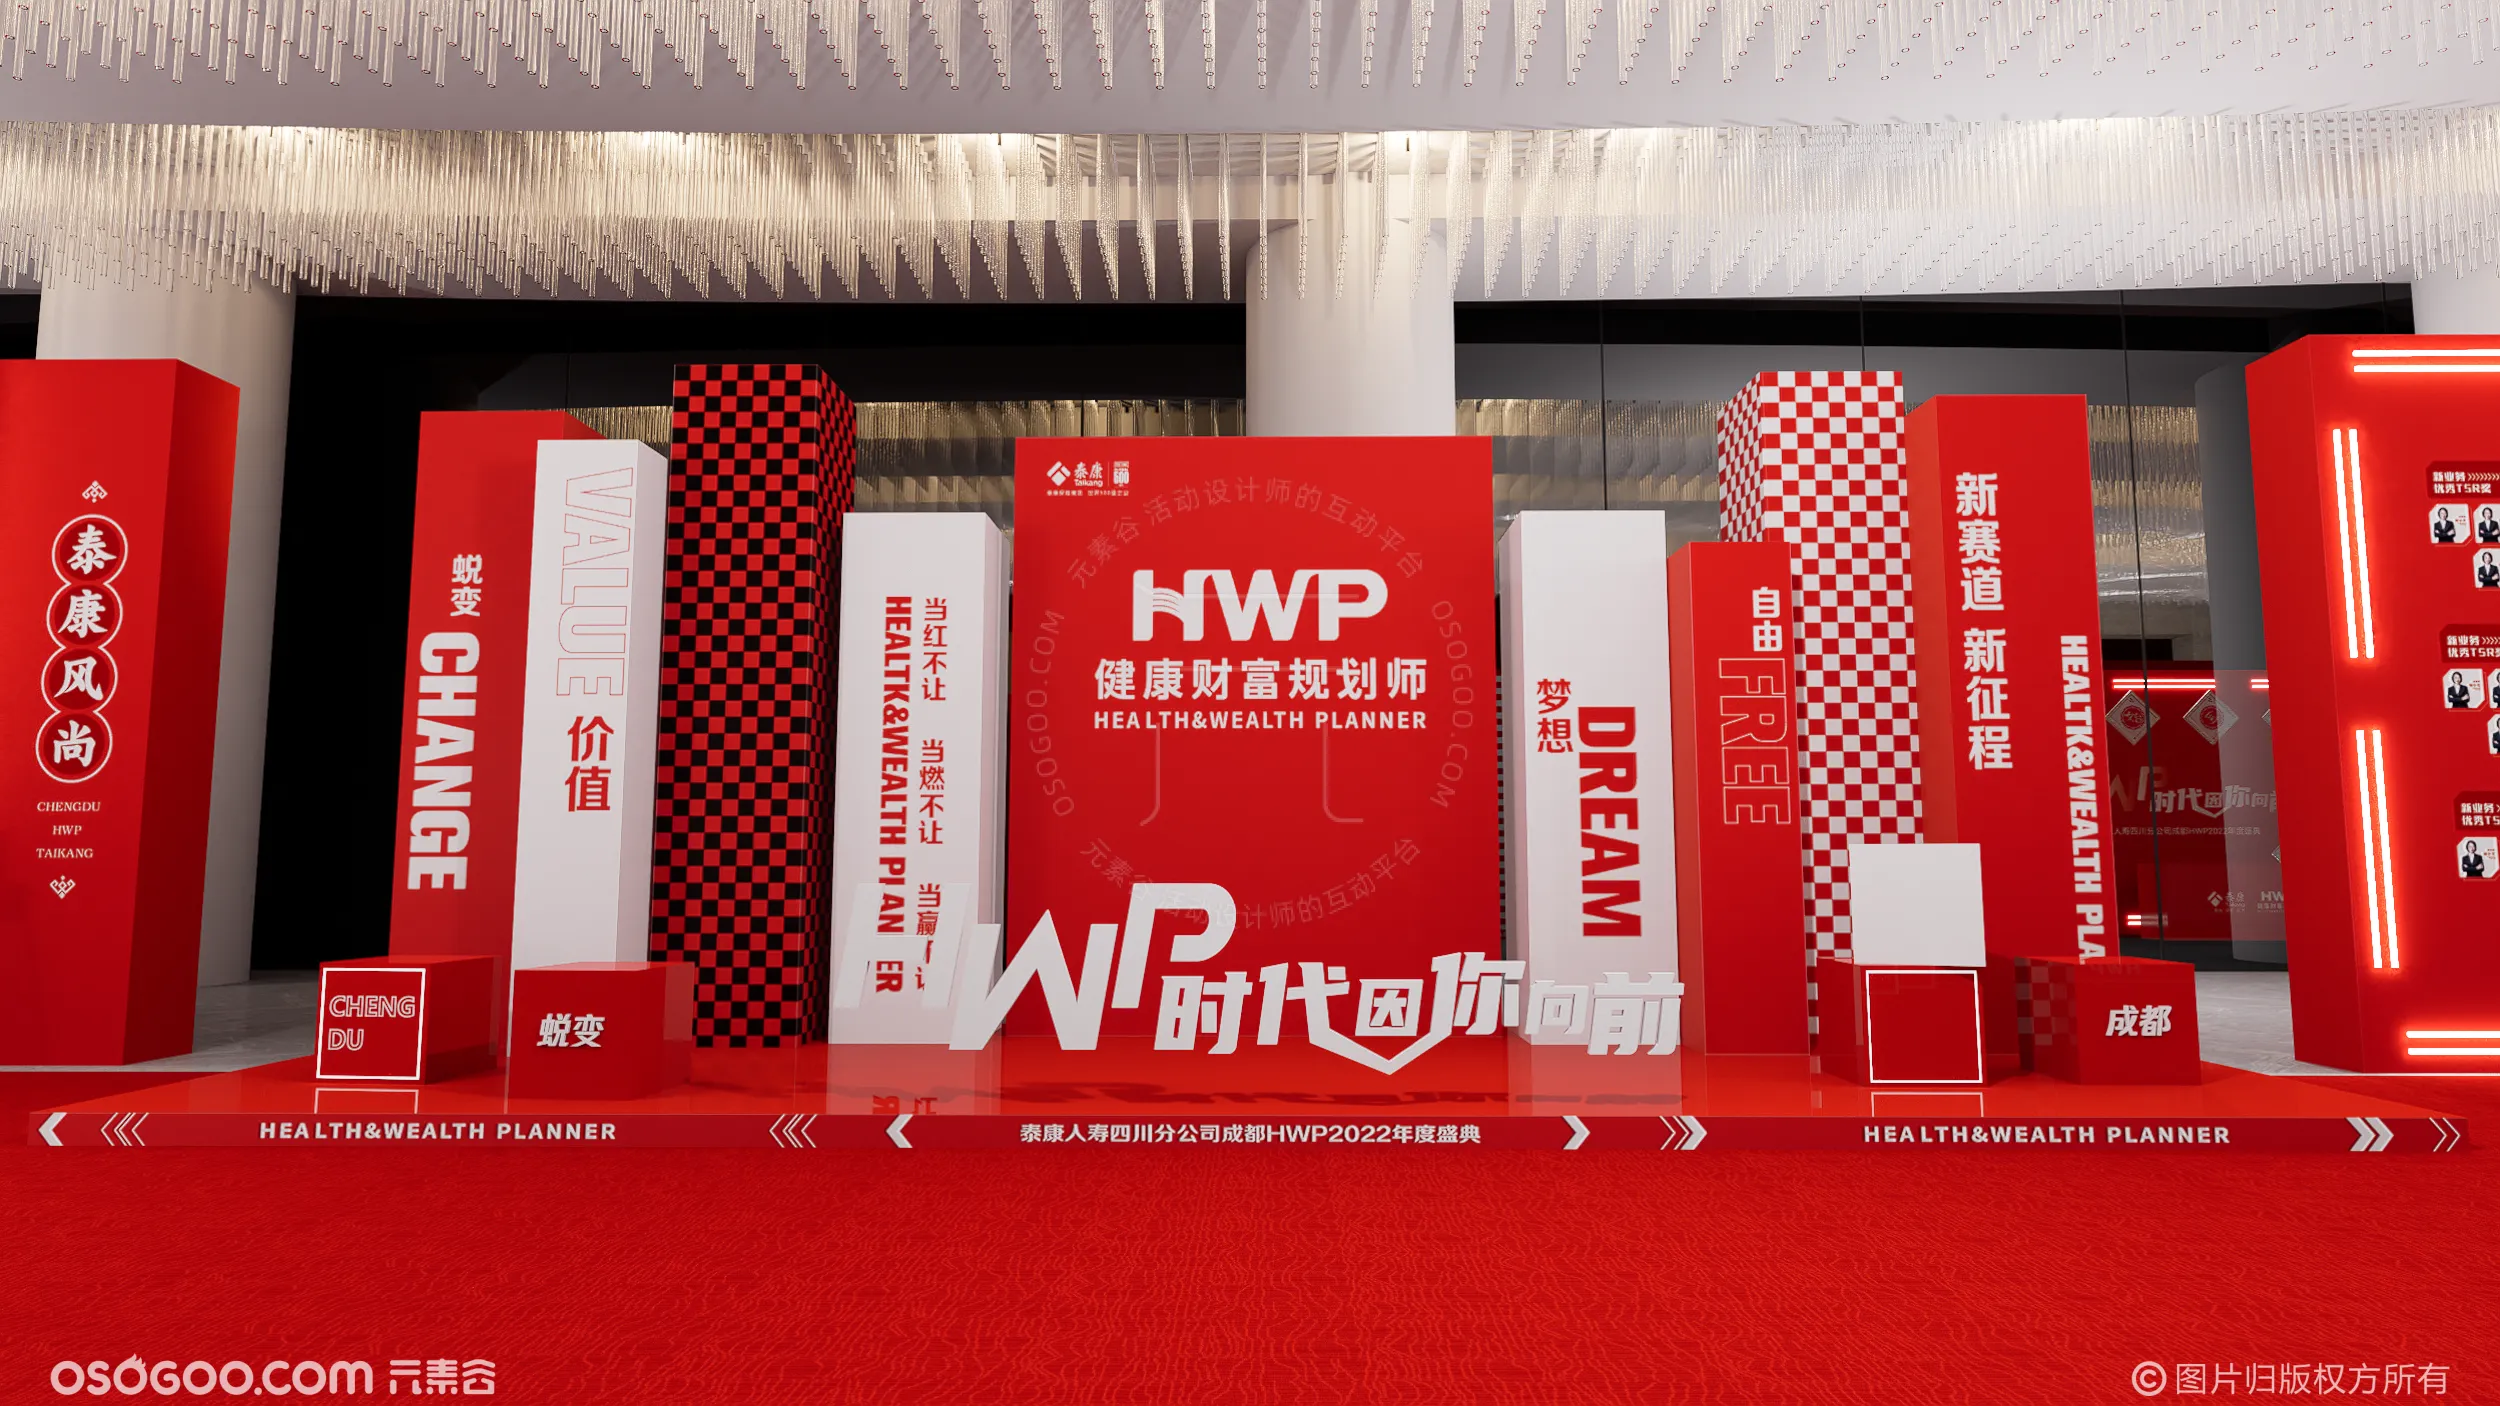 泰康人寿四川分公司成都HWP2022年度盛典